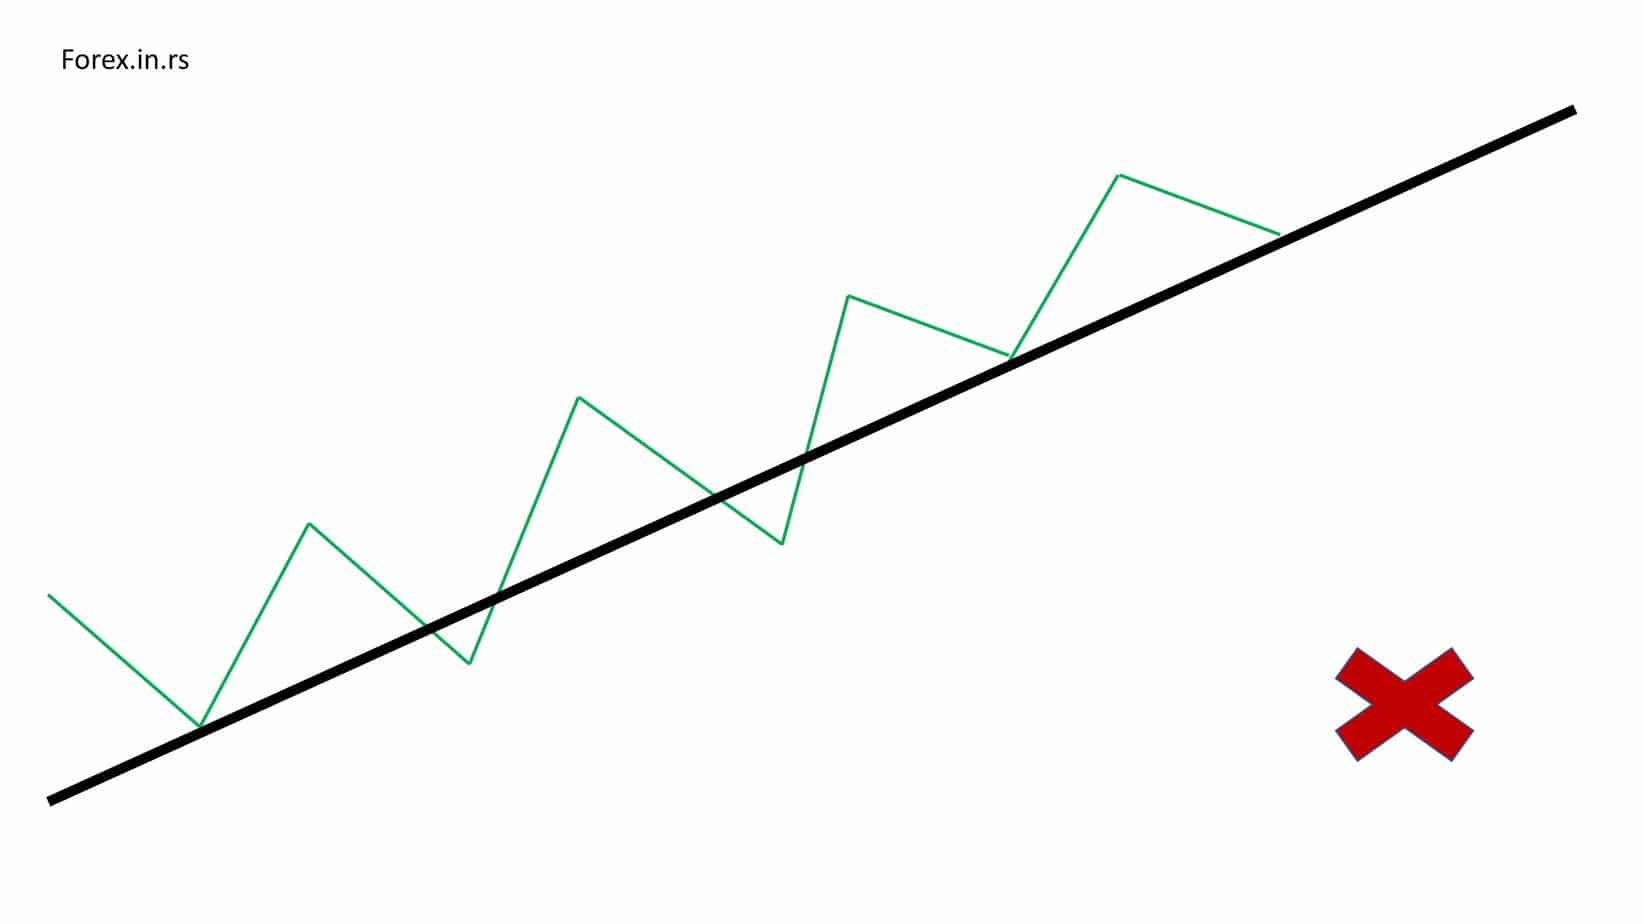 upper trend line in wrong way